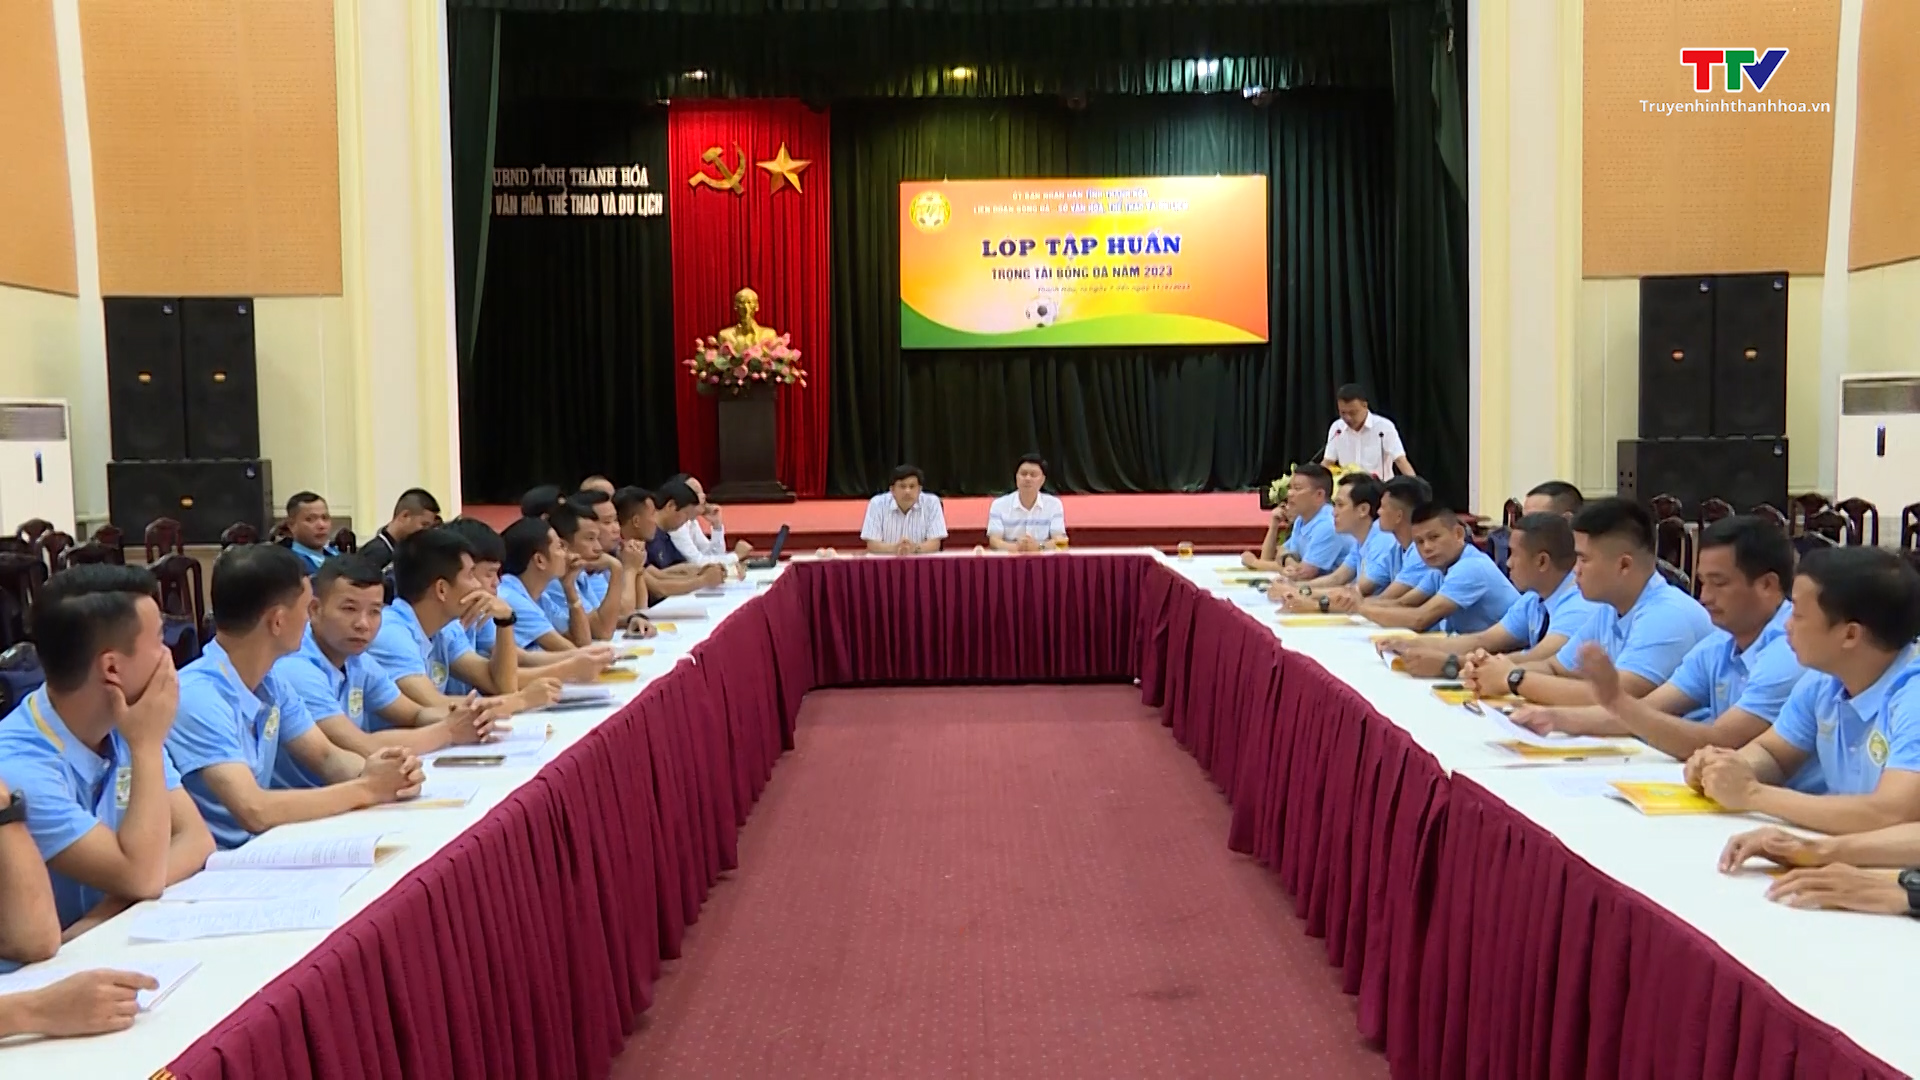 Lớp tập huấn trọng tài bóng đá tỉnh Thanh Hóa năm 2023  - Ảnh 2.